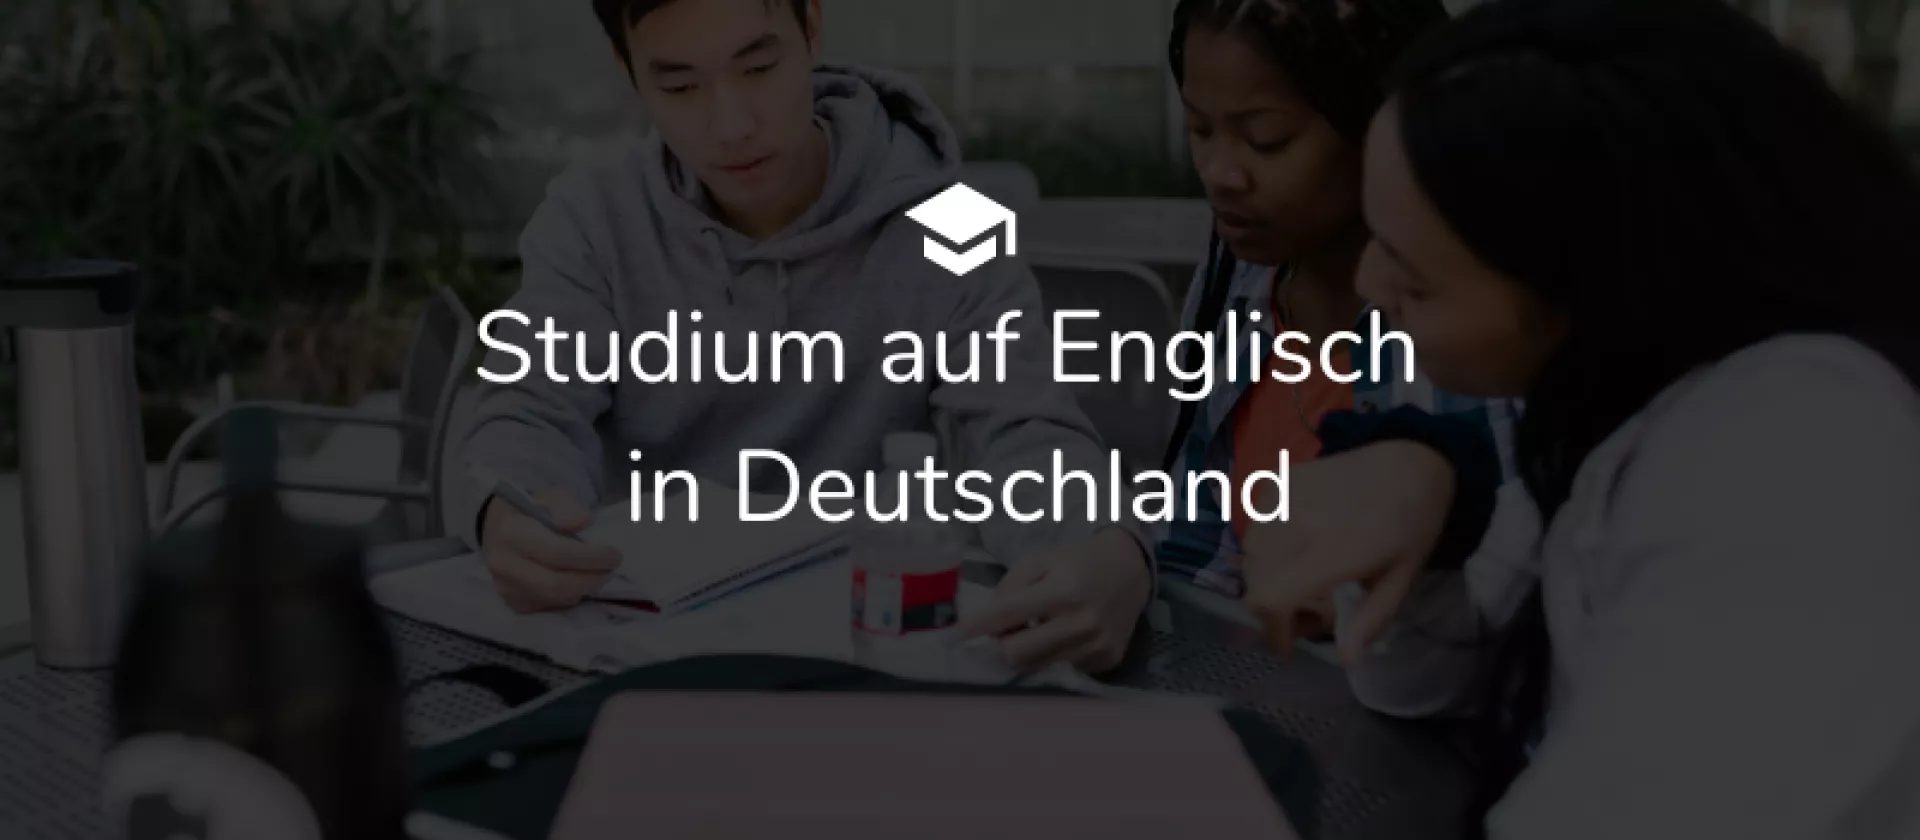 Studium auf Englisch in Deutschland